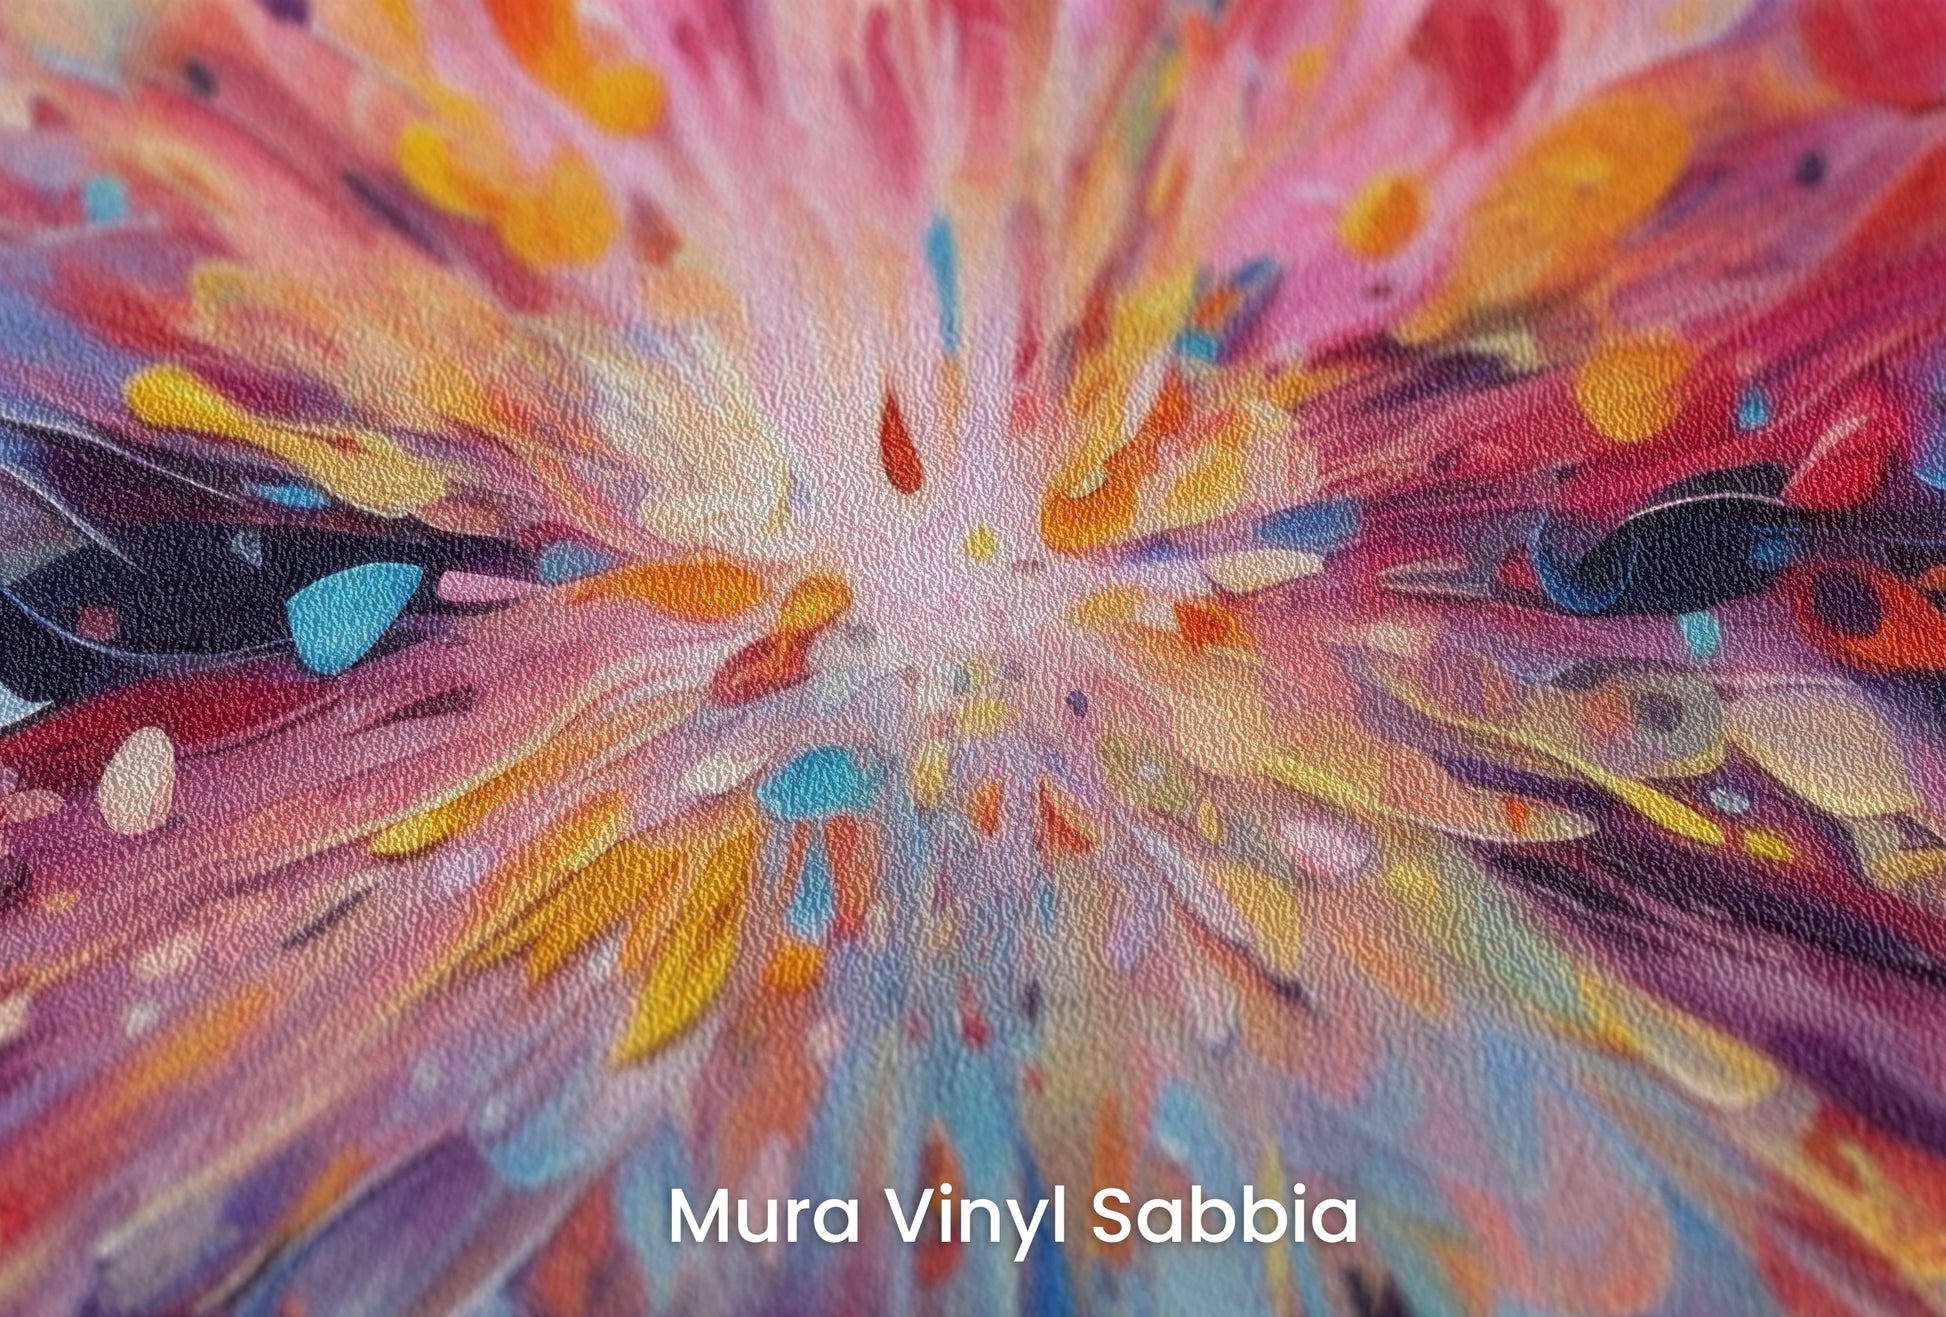 Zbliżenie na artystyczną fototapetę o nazwie Explosion of Joy na podłożu Mura Vinyl Sabbia struktura grubego ziarna piasku.